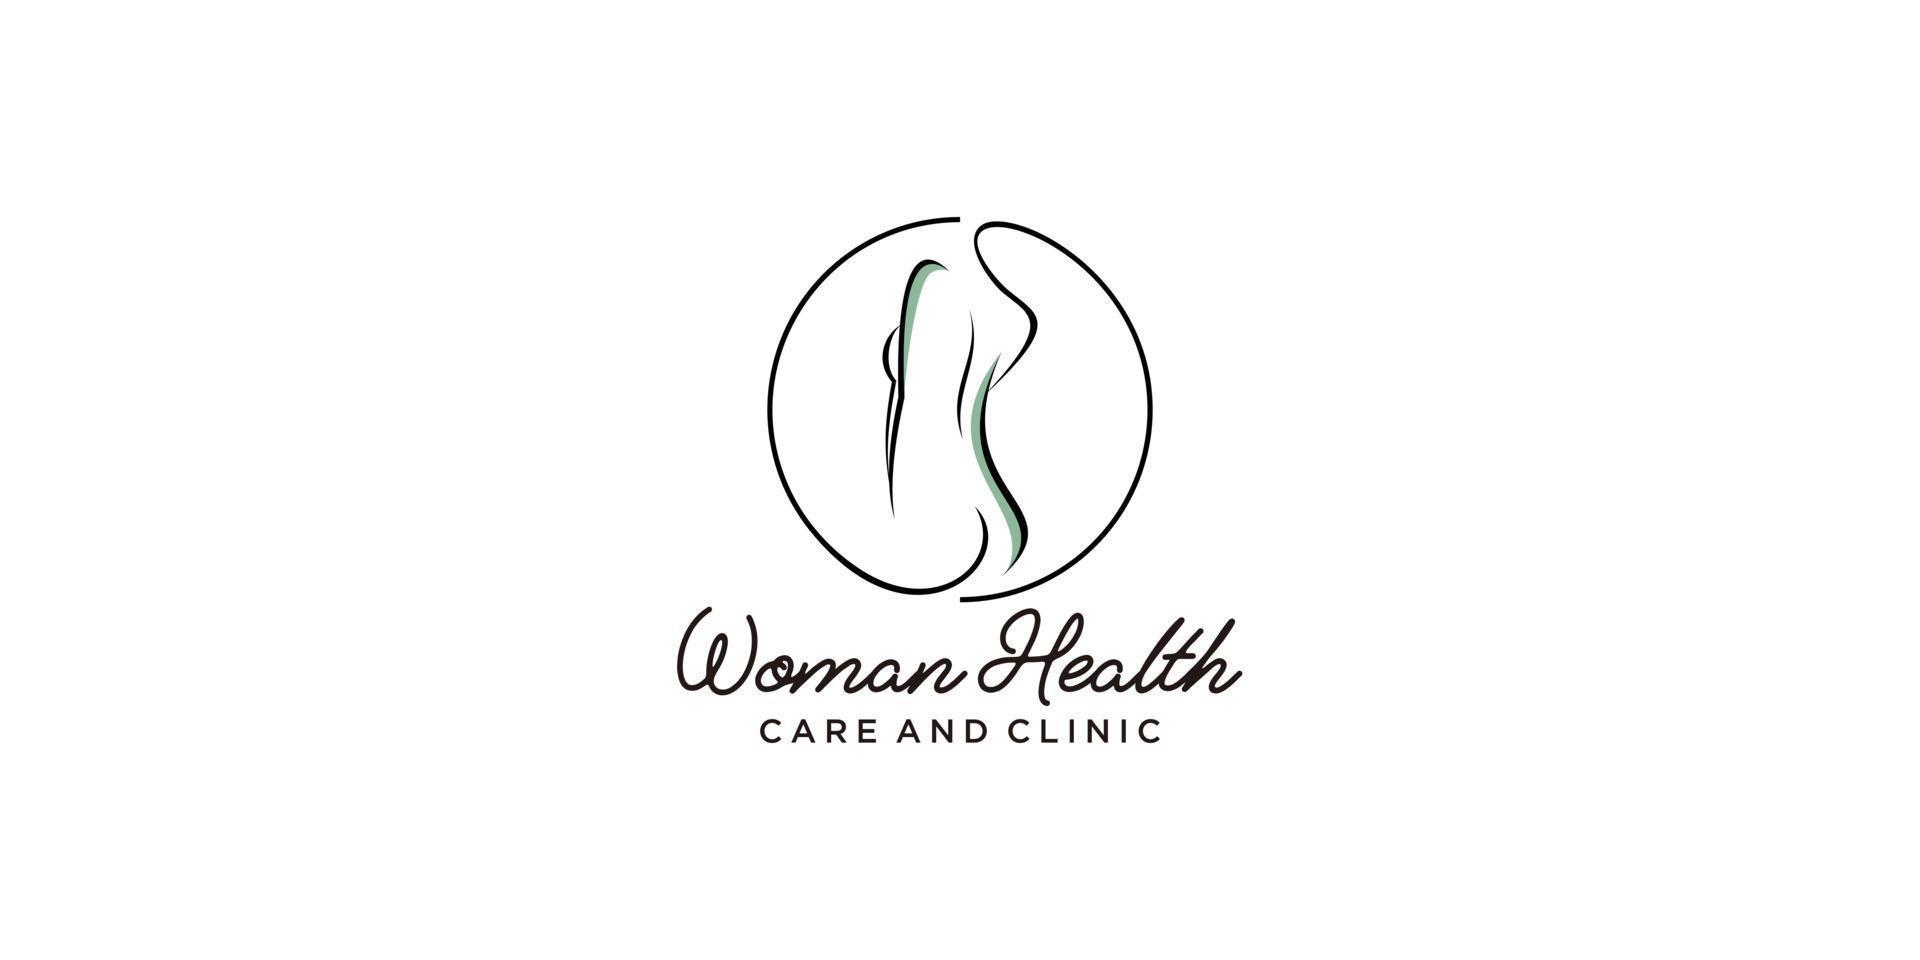 Women health logo idea vector